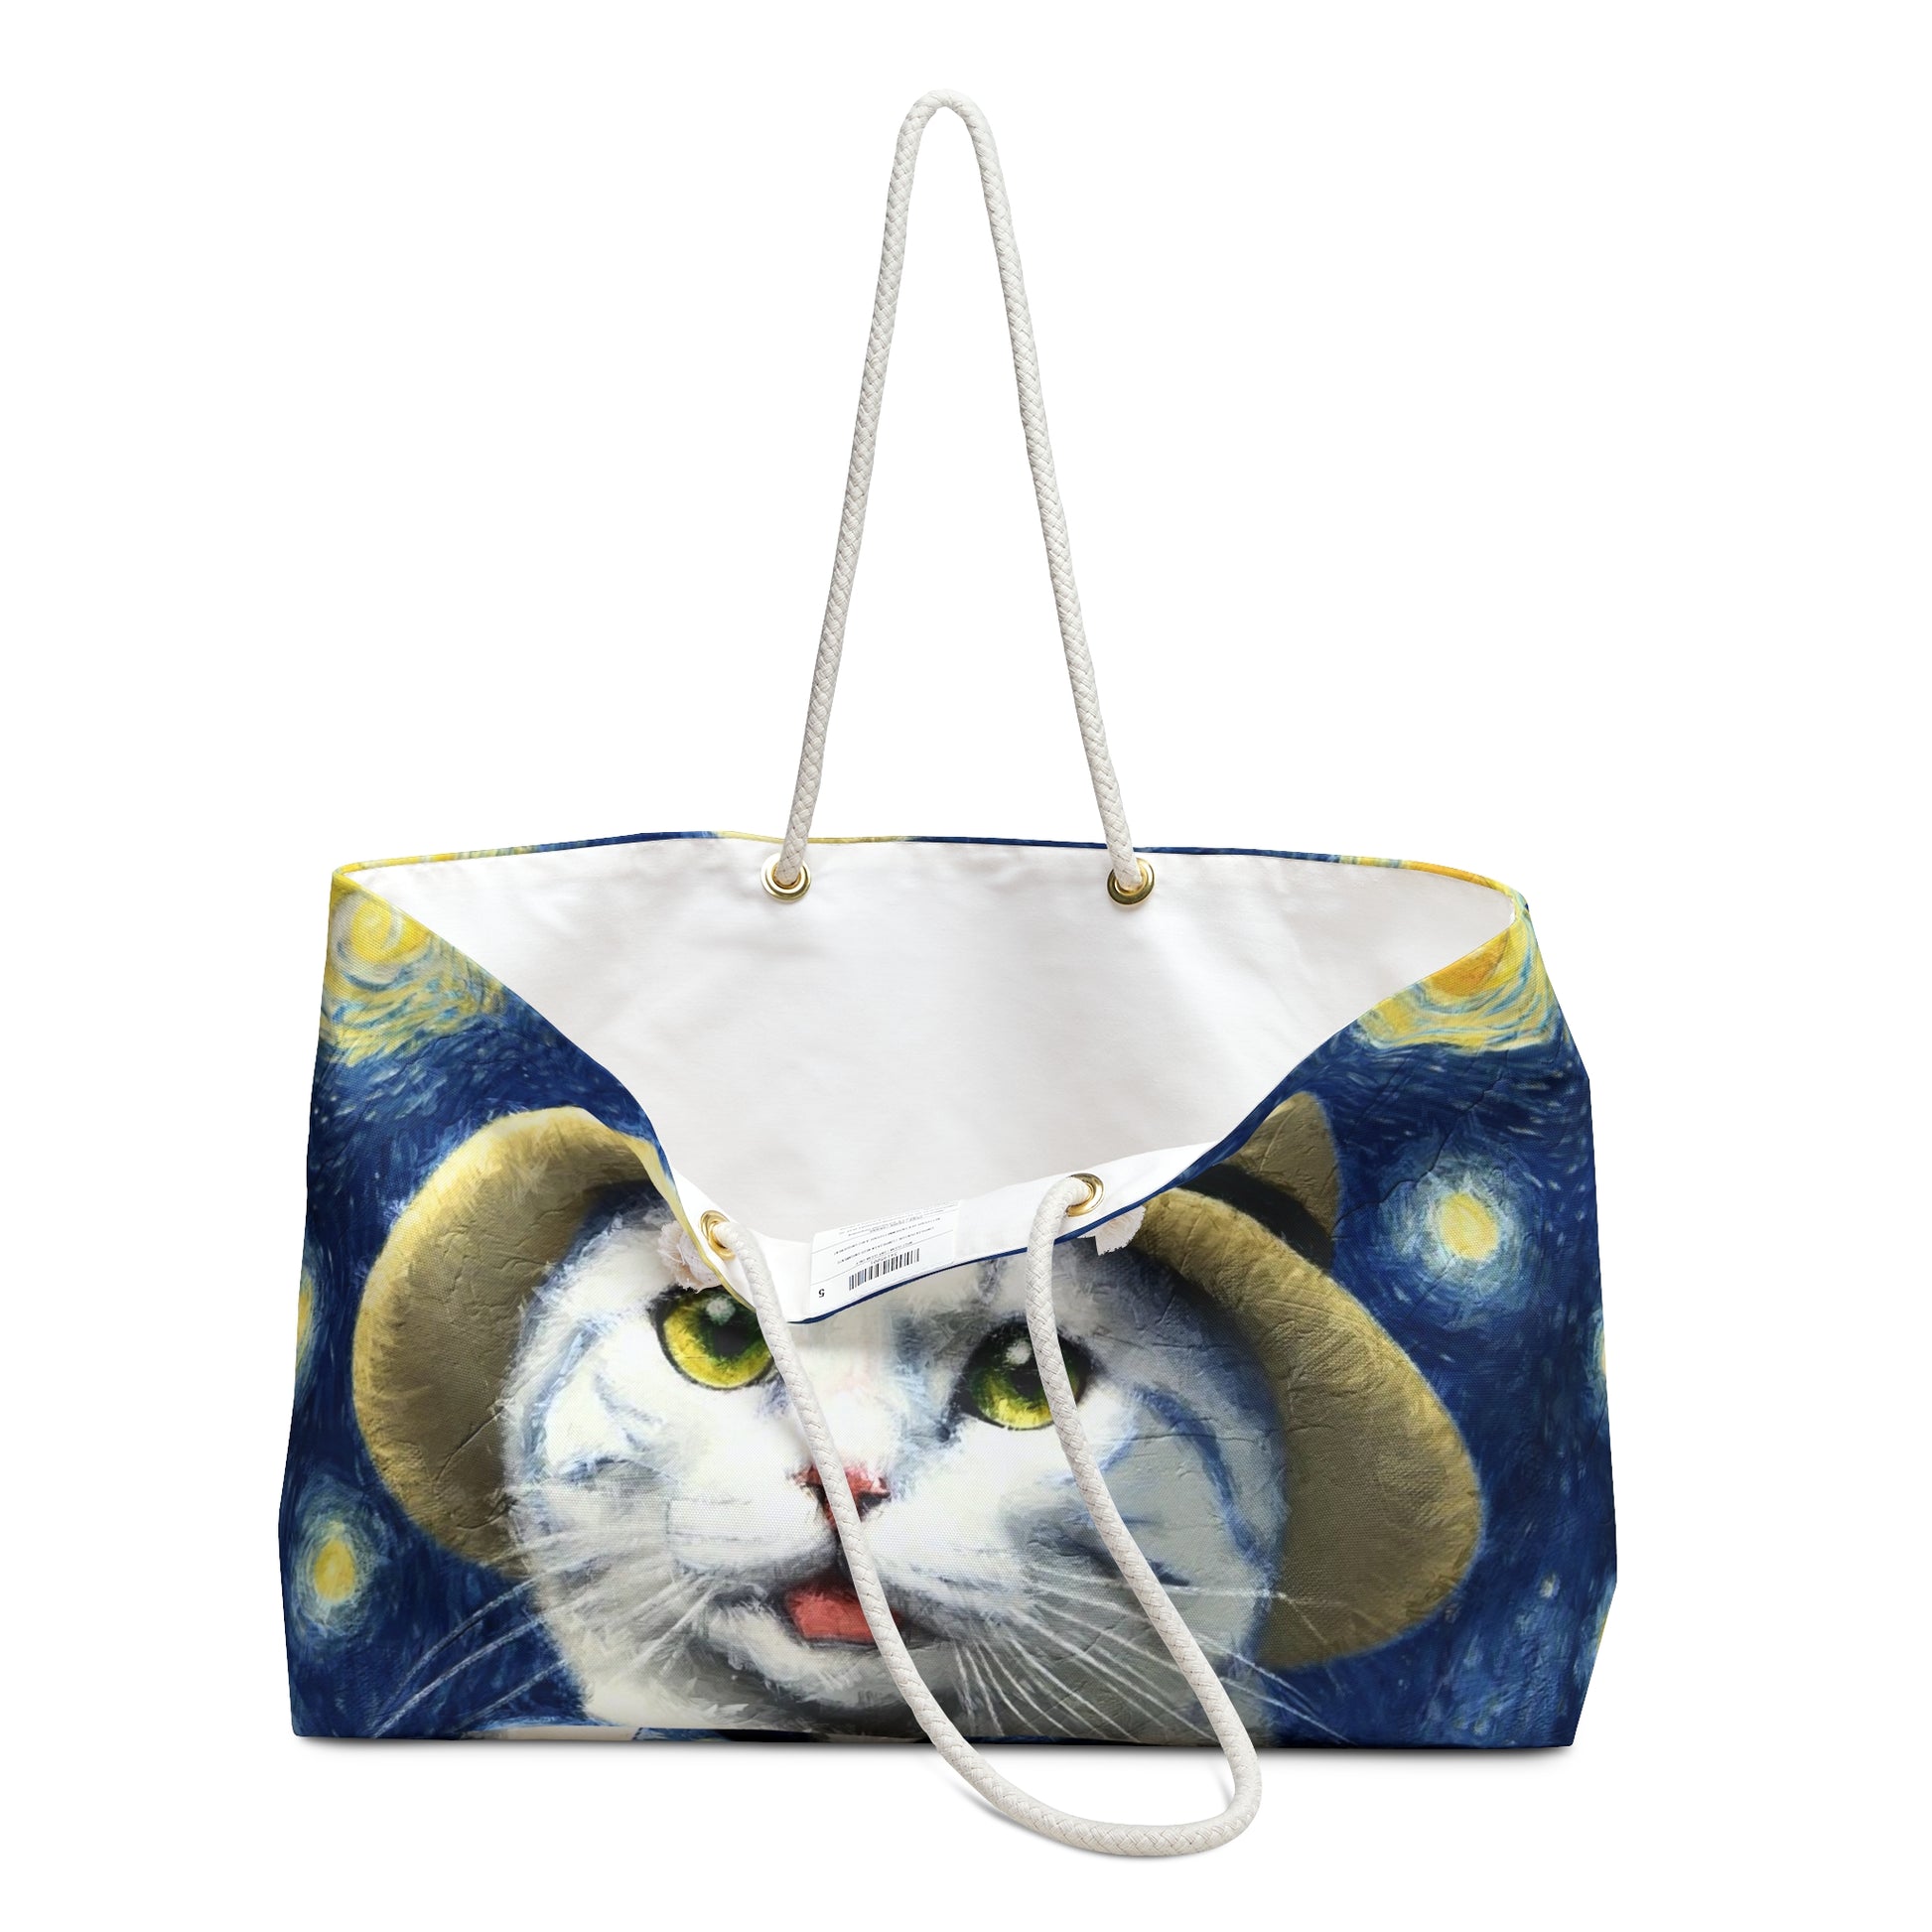 Weekender Tote Bag - Starry Eyed Kitten handles